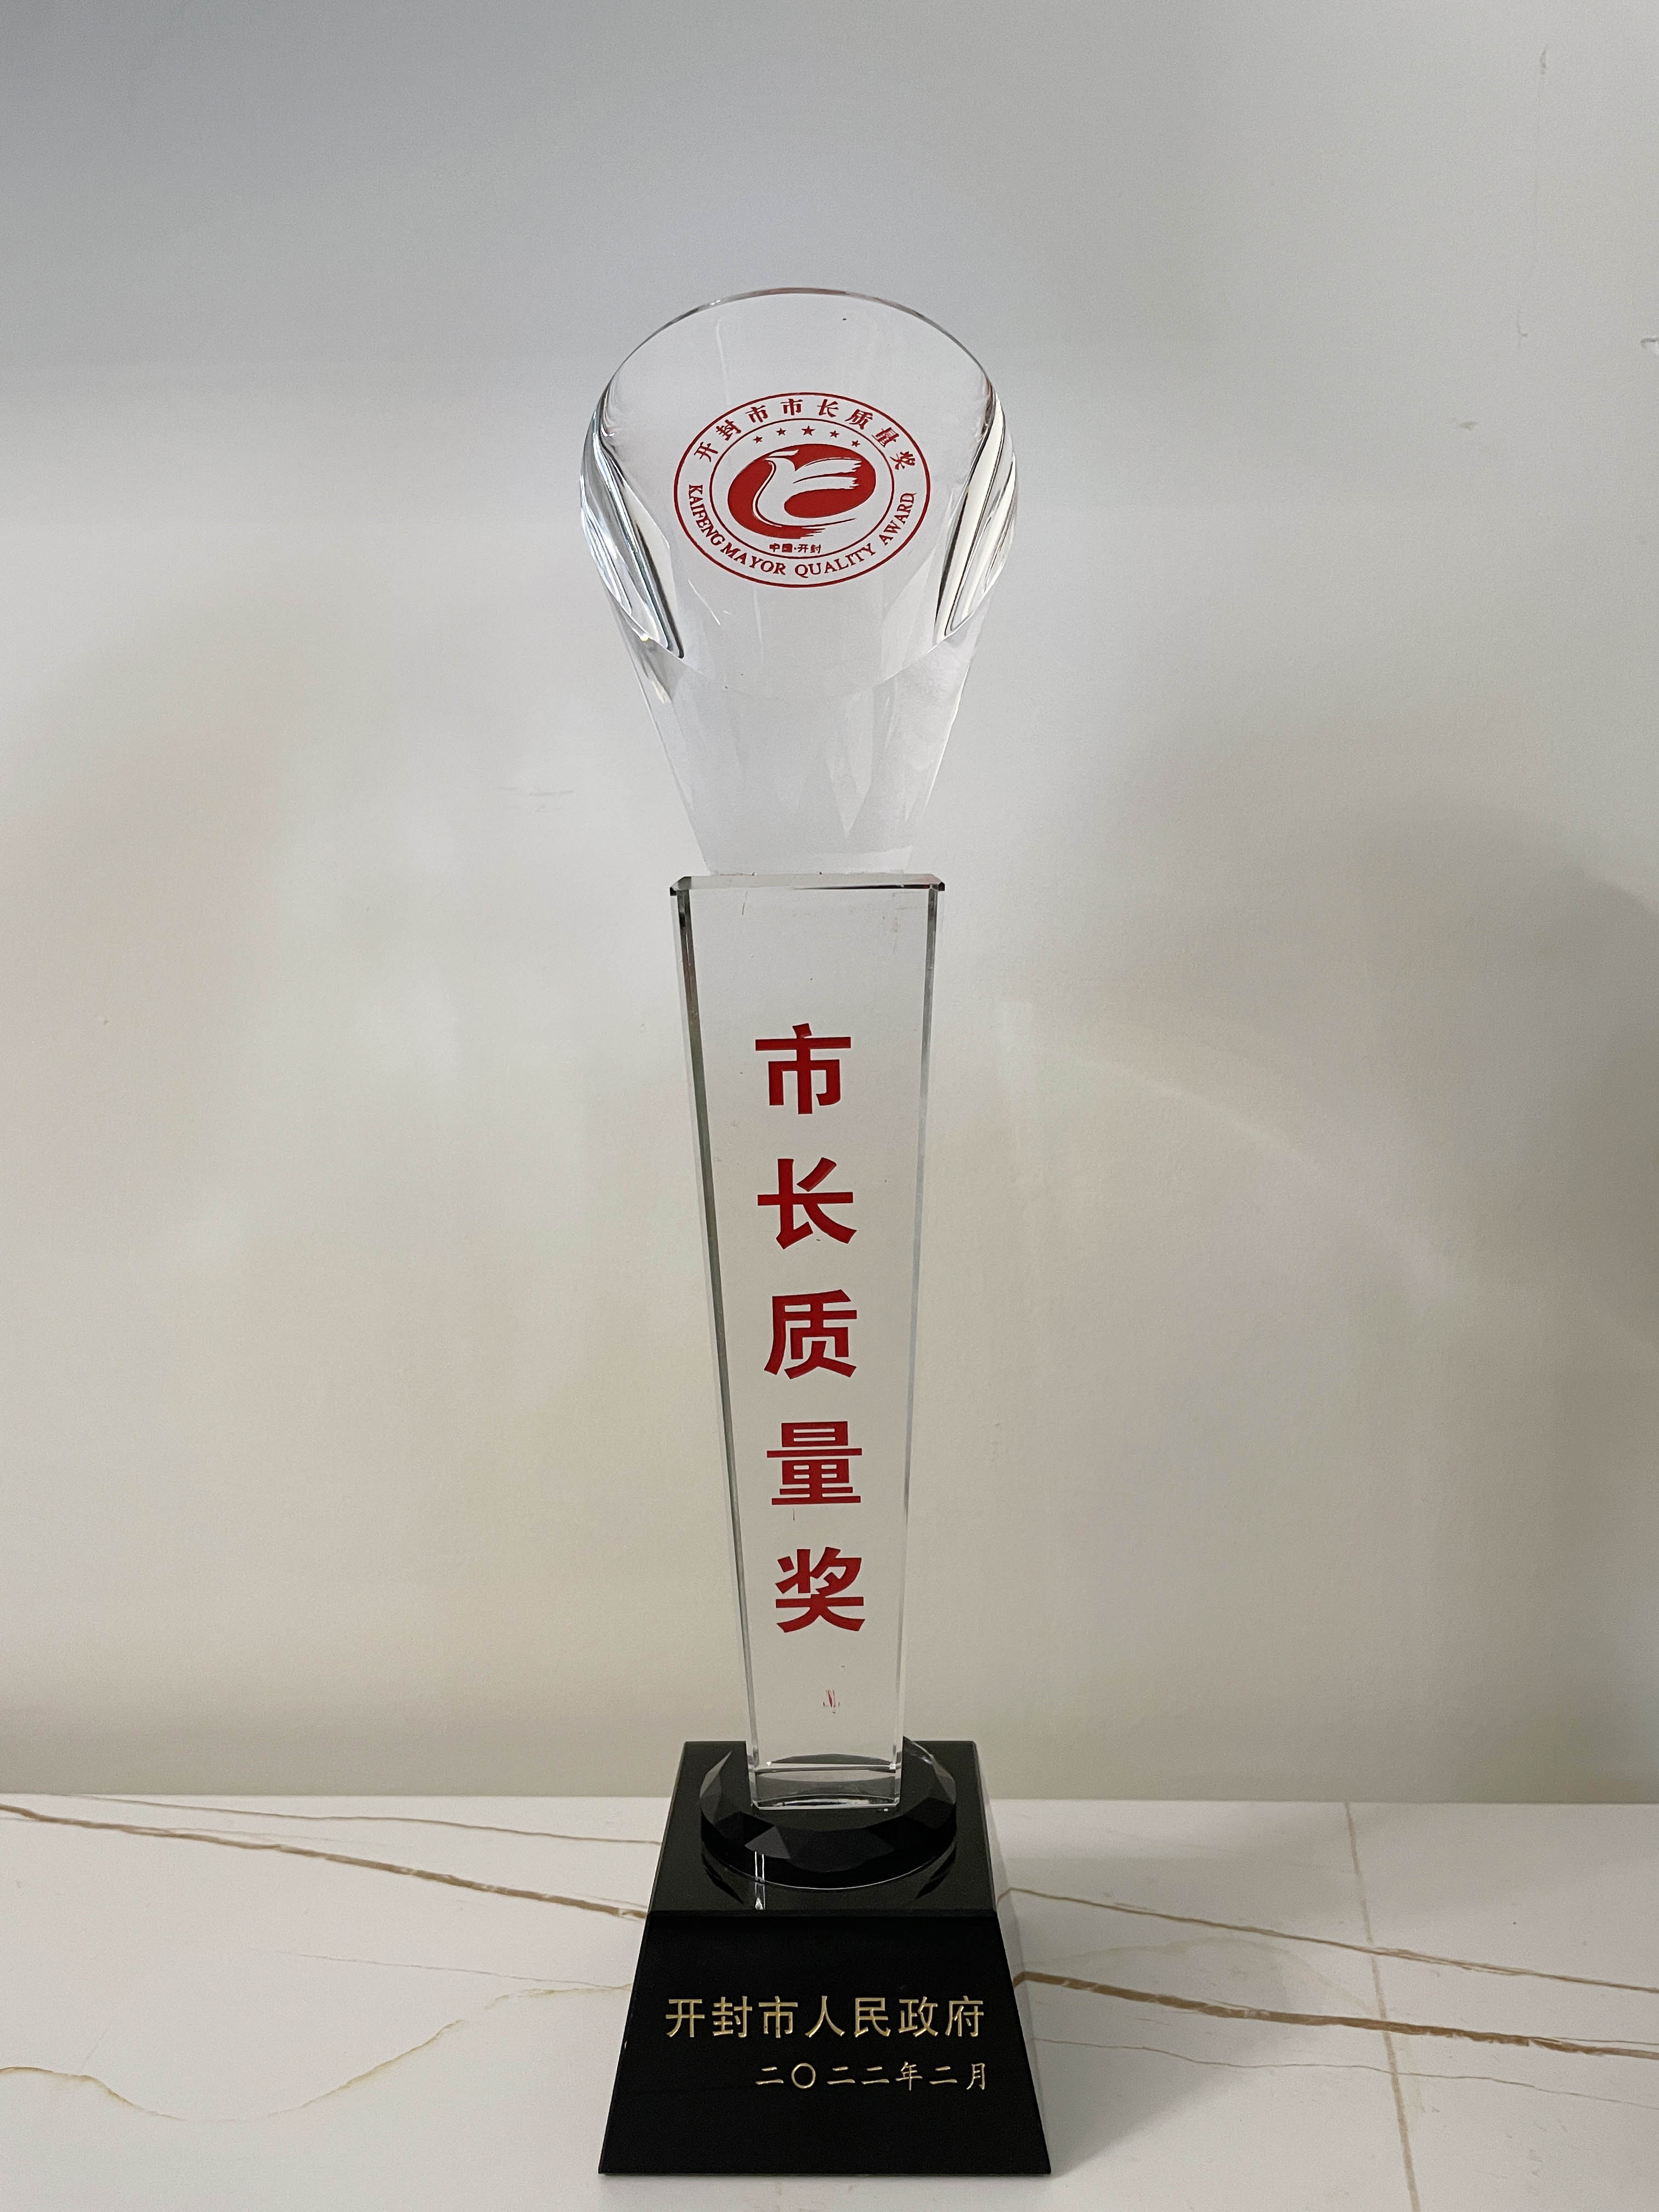 河南省球赛下注官网管业有限公司2021年度开封市市长质量奖奖杯